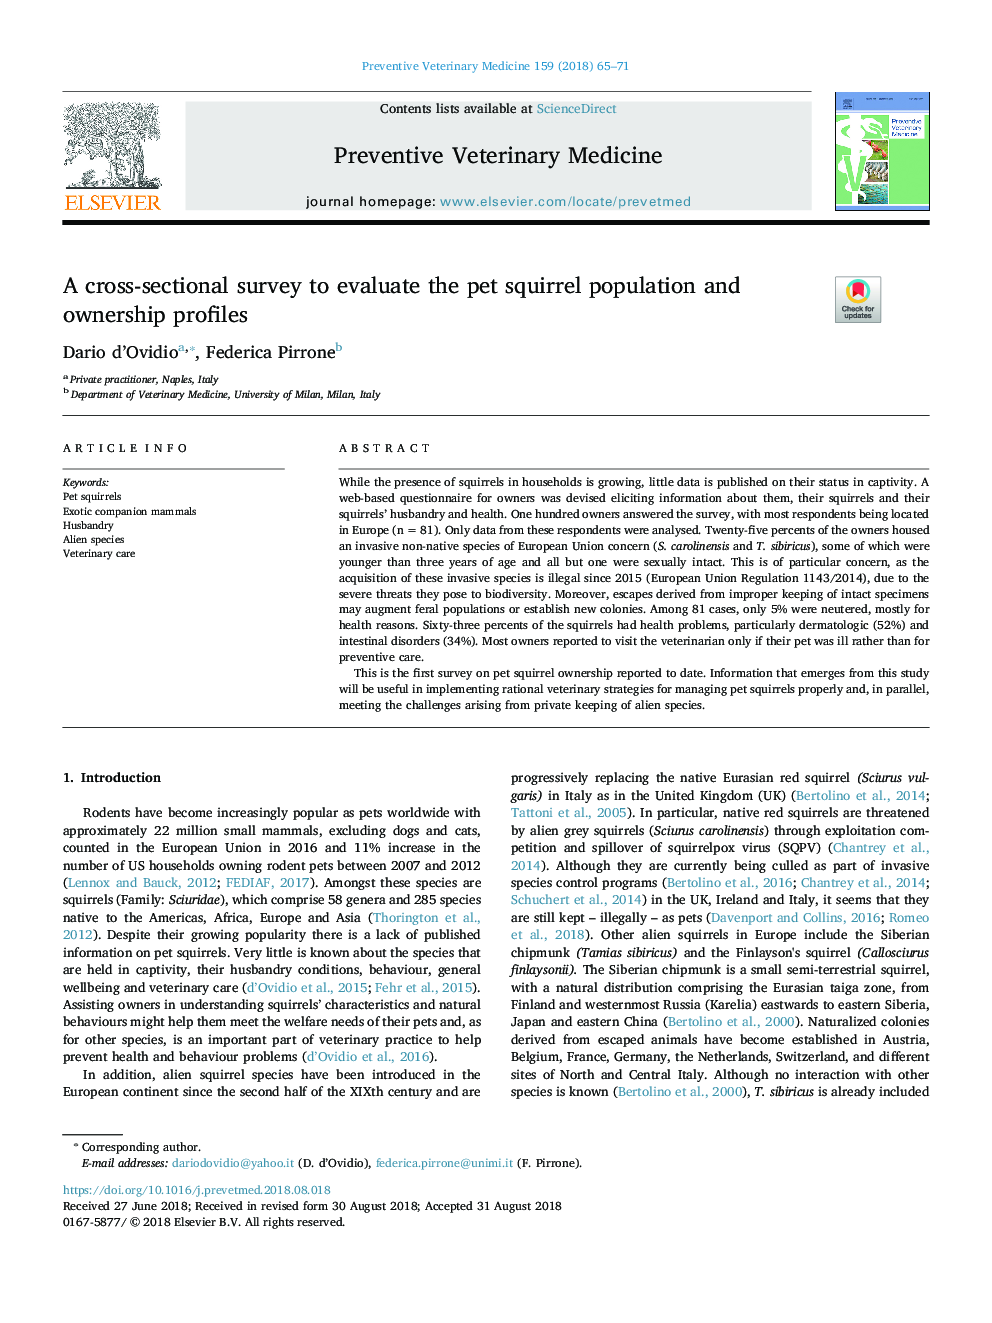 یک بررسی مقطعی برای ارزیابی جمعیت و پروفایل مالکیت سنجاب حیوان خانگی